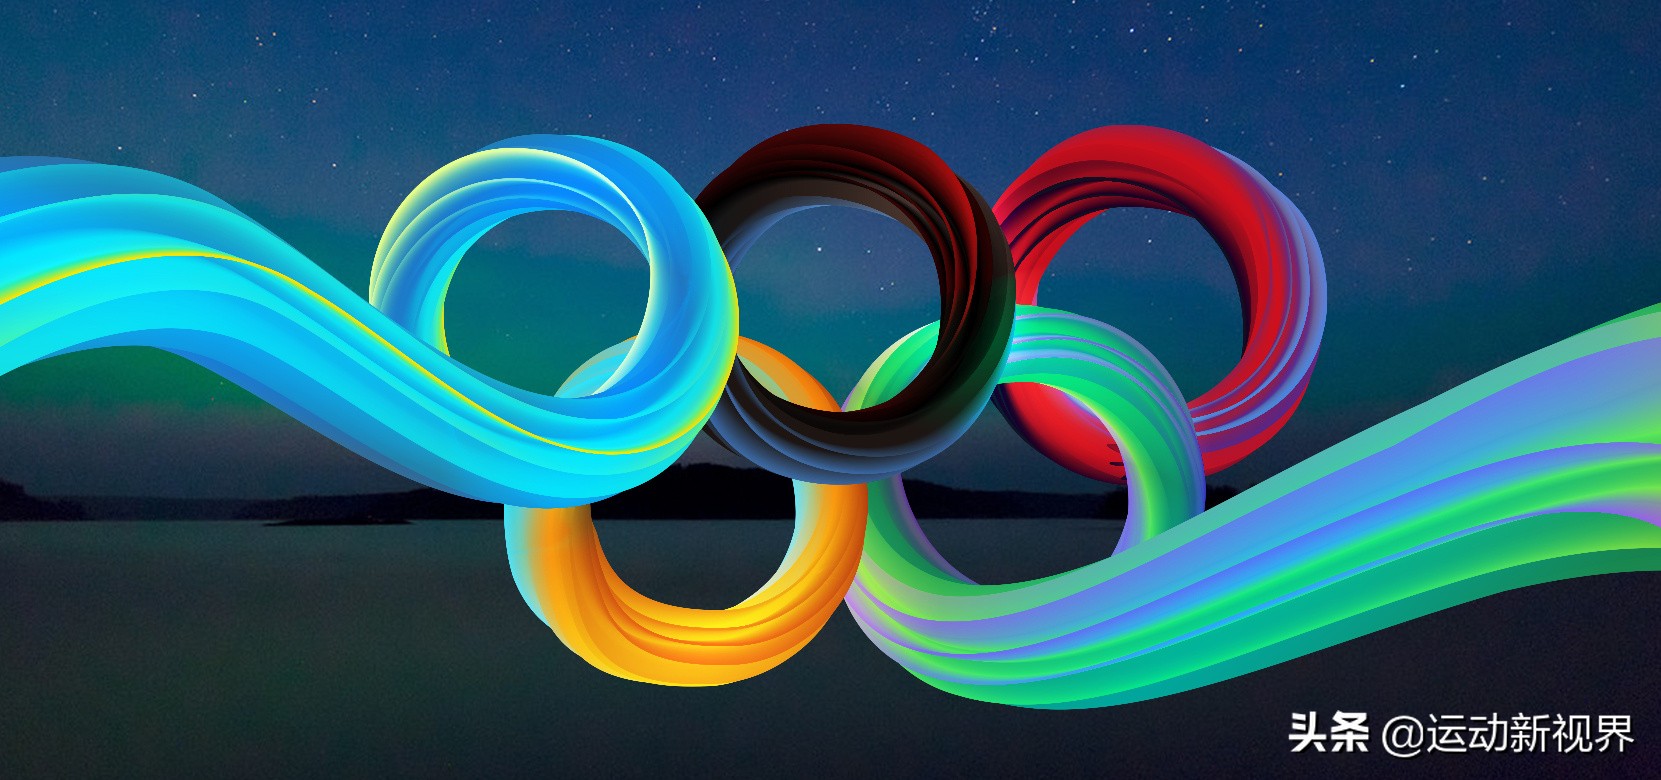 奥运五环的颜色是哪几种颜色（奥运会是五色环旗，其中黄色代表了什么含义？是指的亚洲吗？）